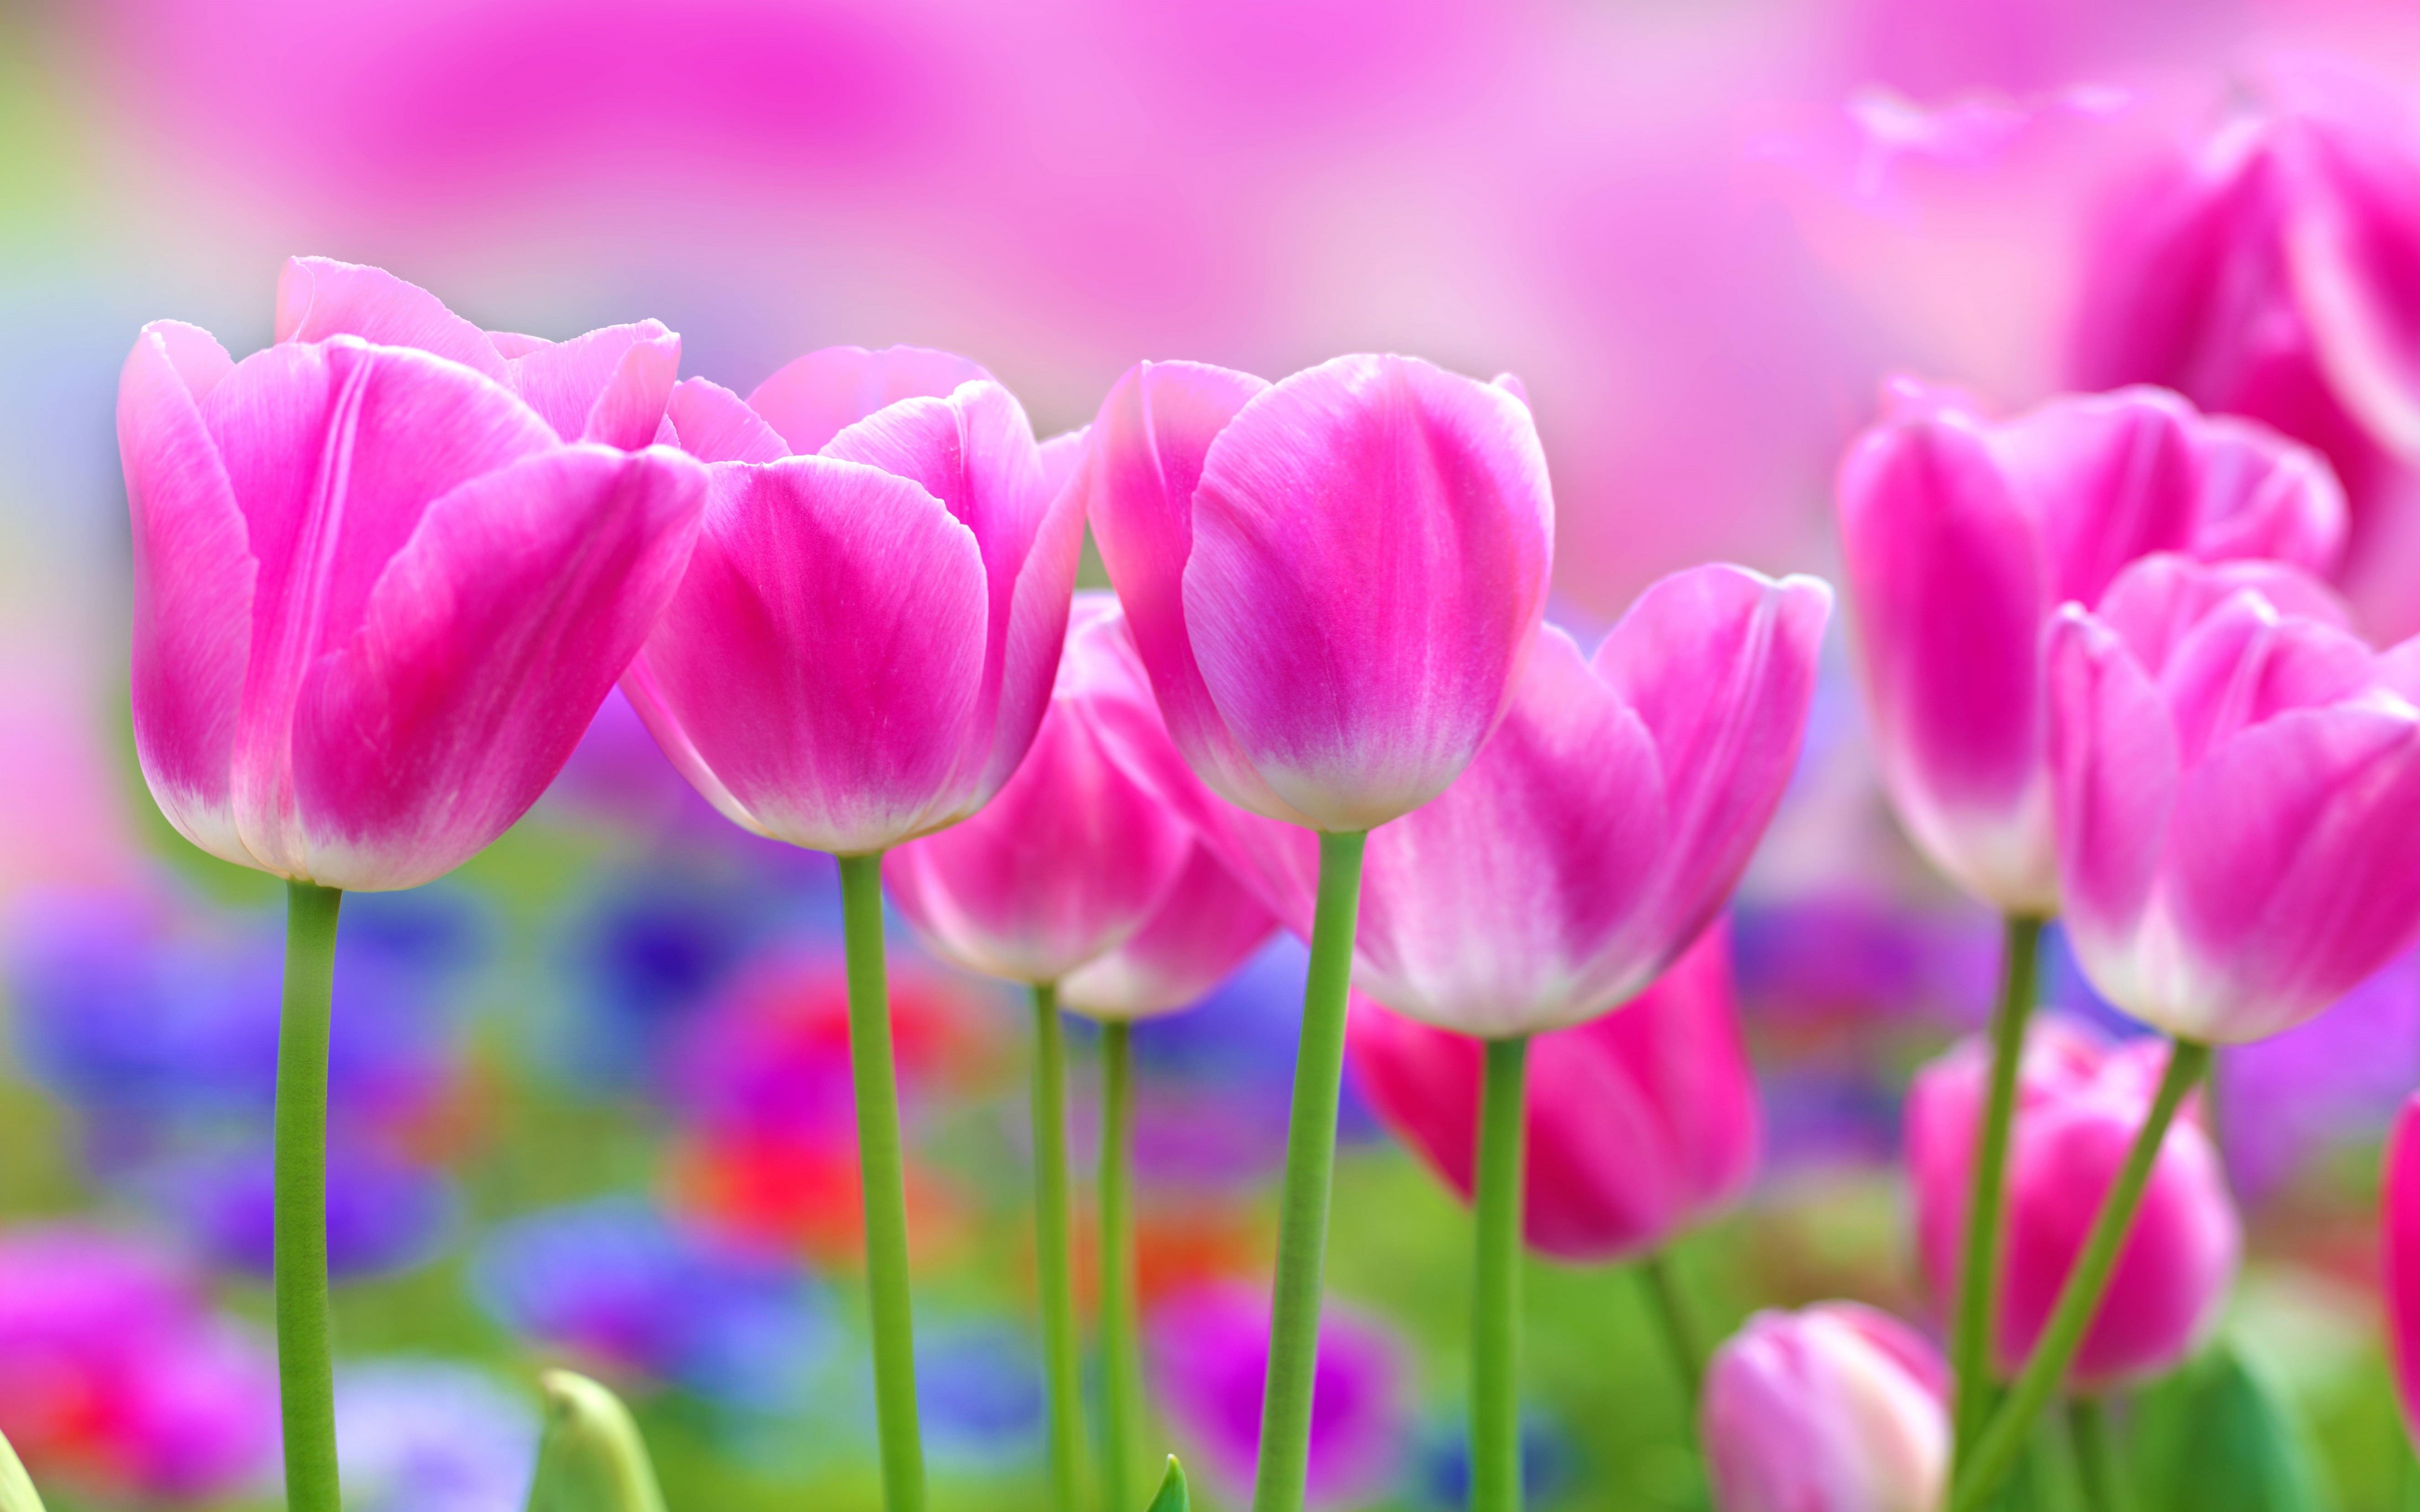 Обои на телефон красивые тюльпаны. Розовые тюльпаны. Весенние цветы. Весенние тюльпаны. Розовые цветы.